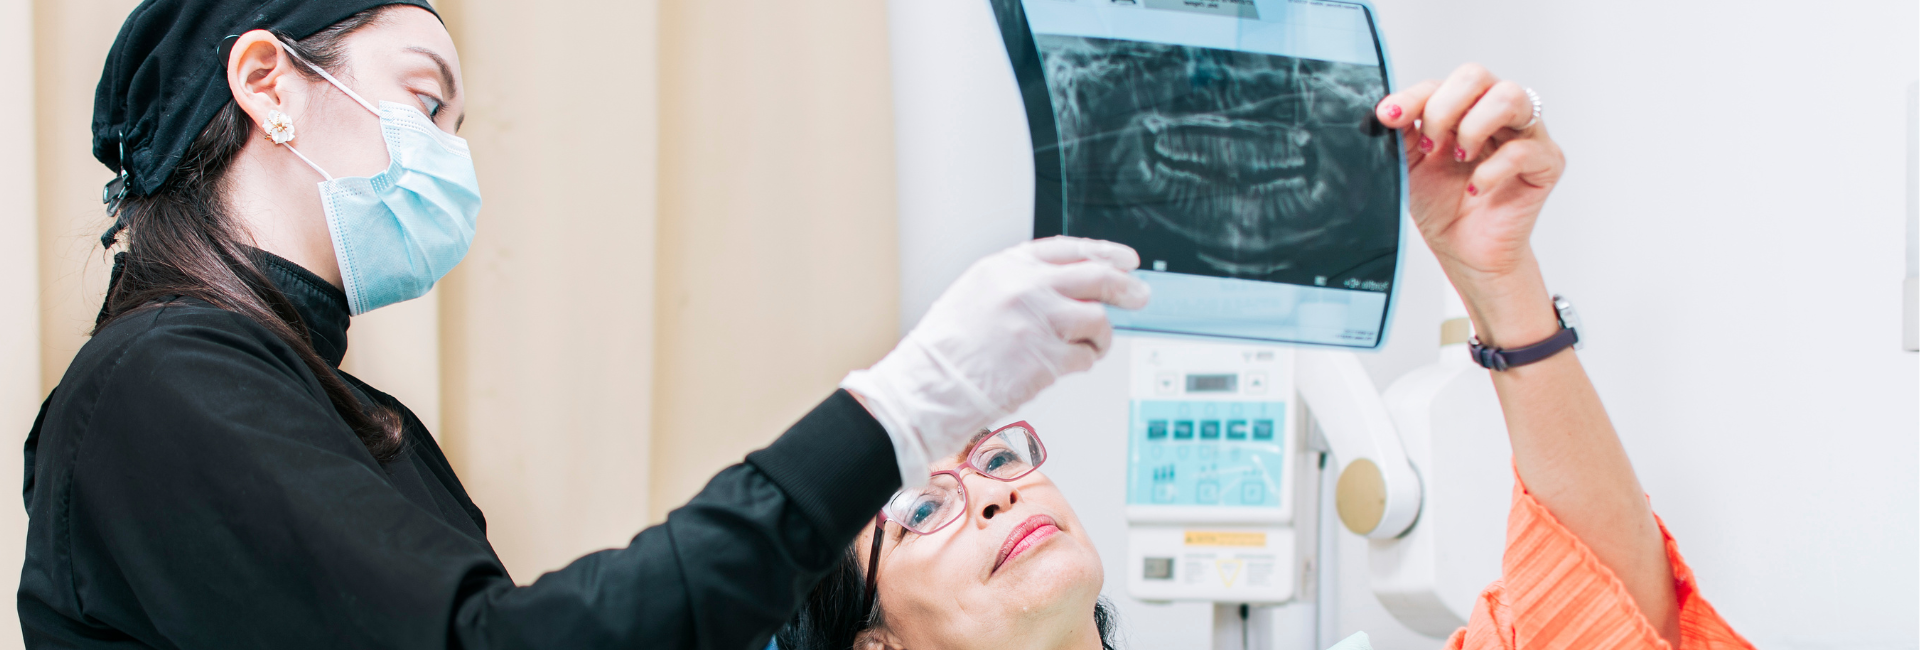 ¿Qué es una radiografía dental? Te explicamos!